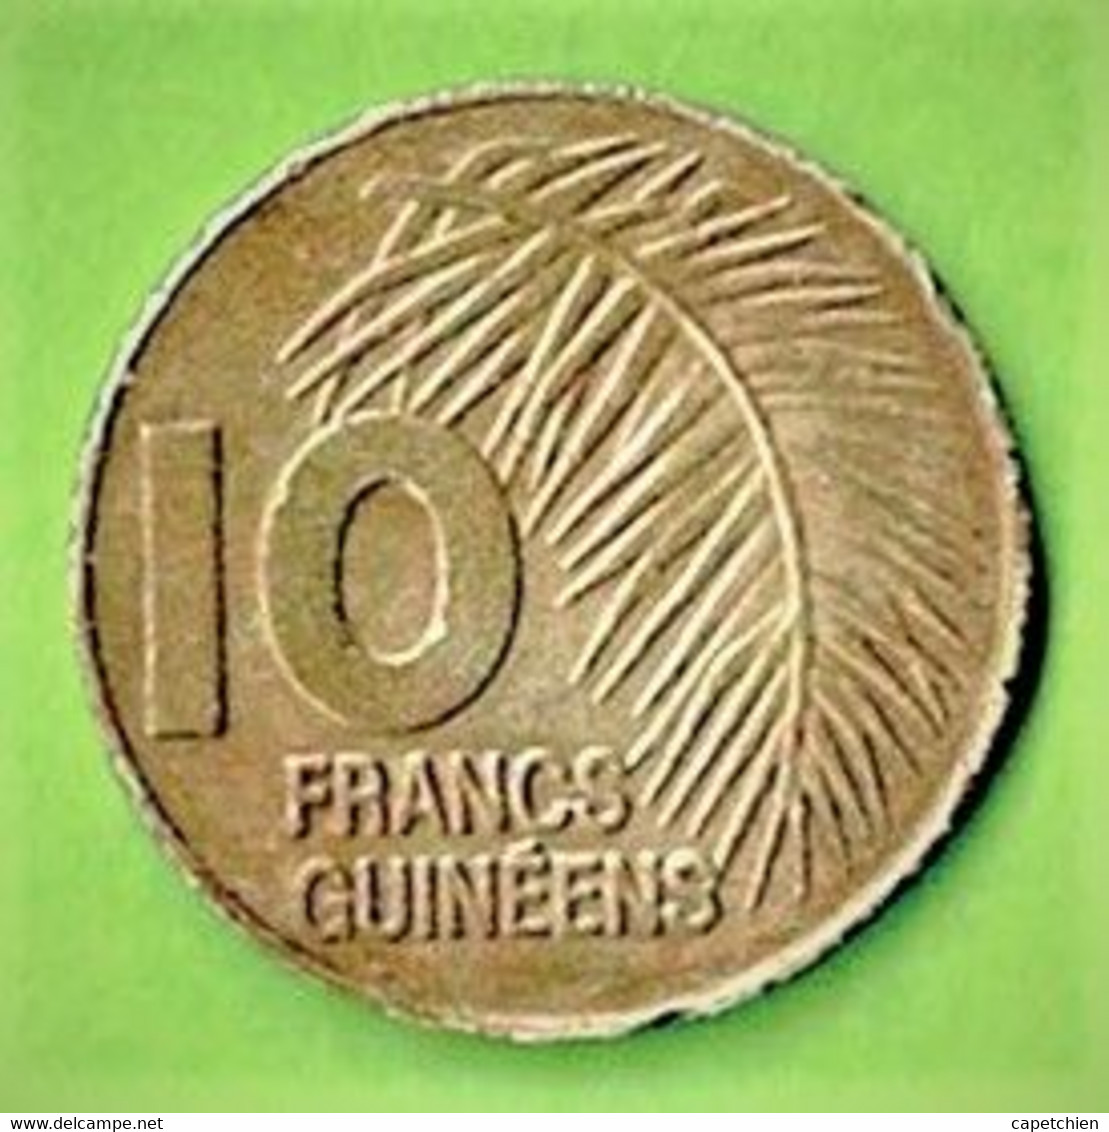 10 FRANCS GUINEENS / 1985 - Guinea